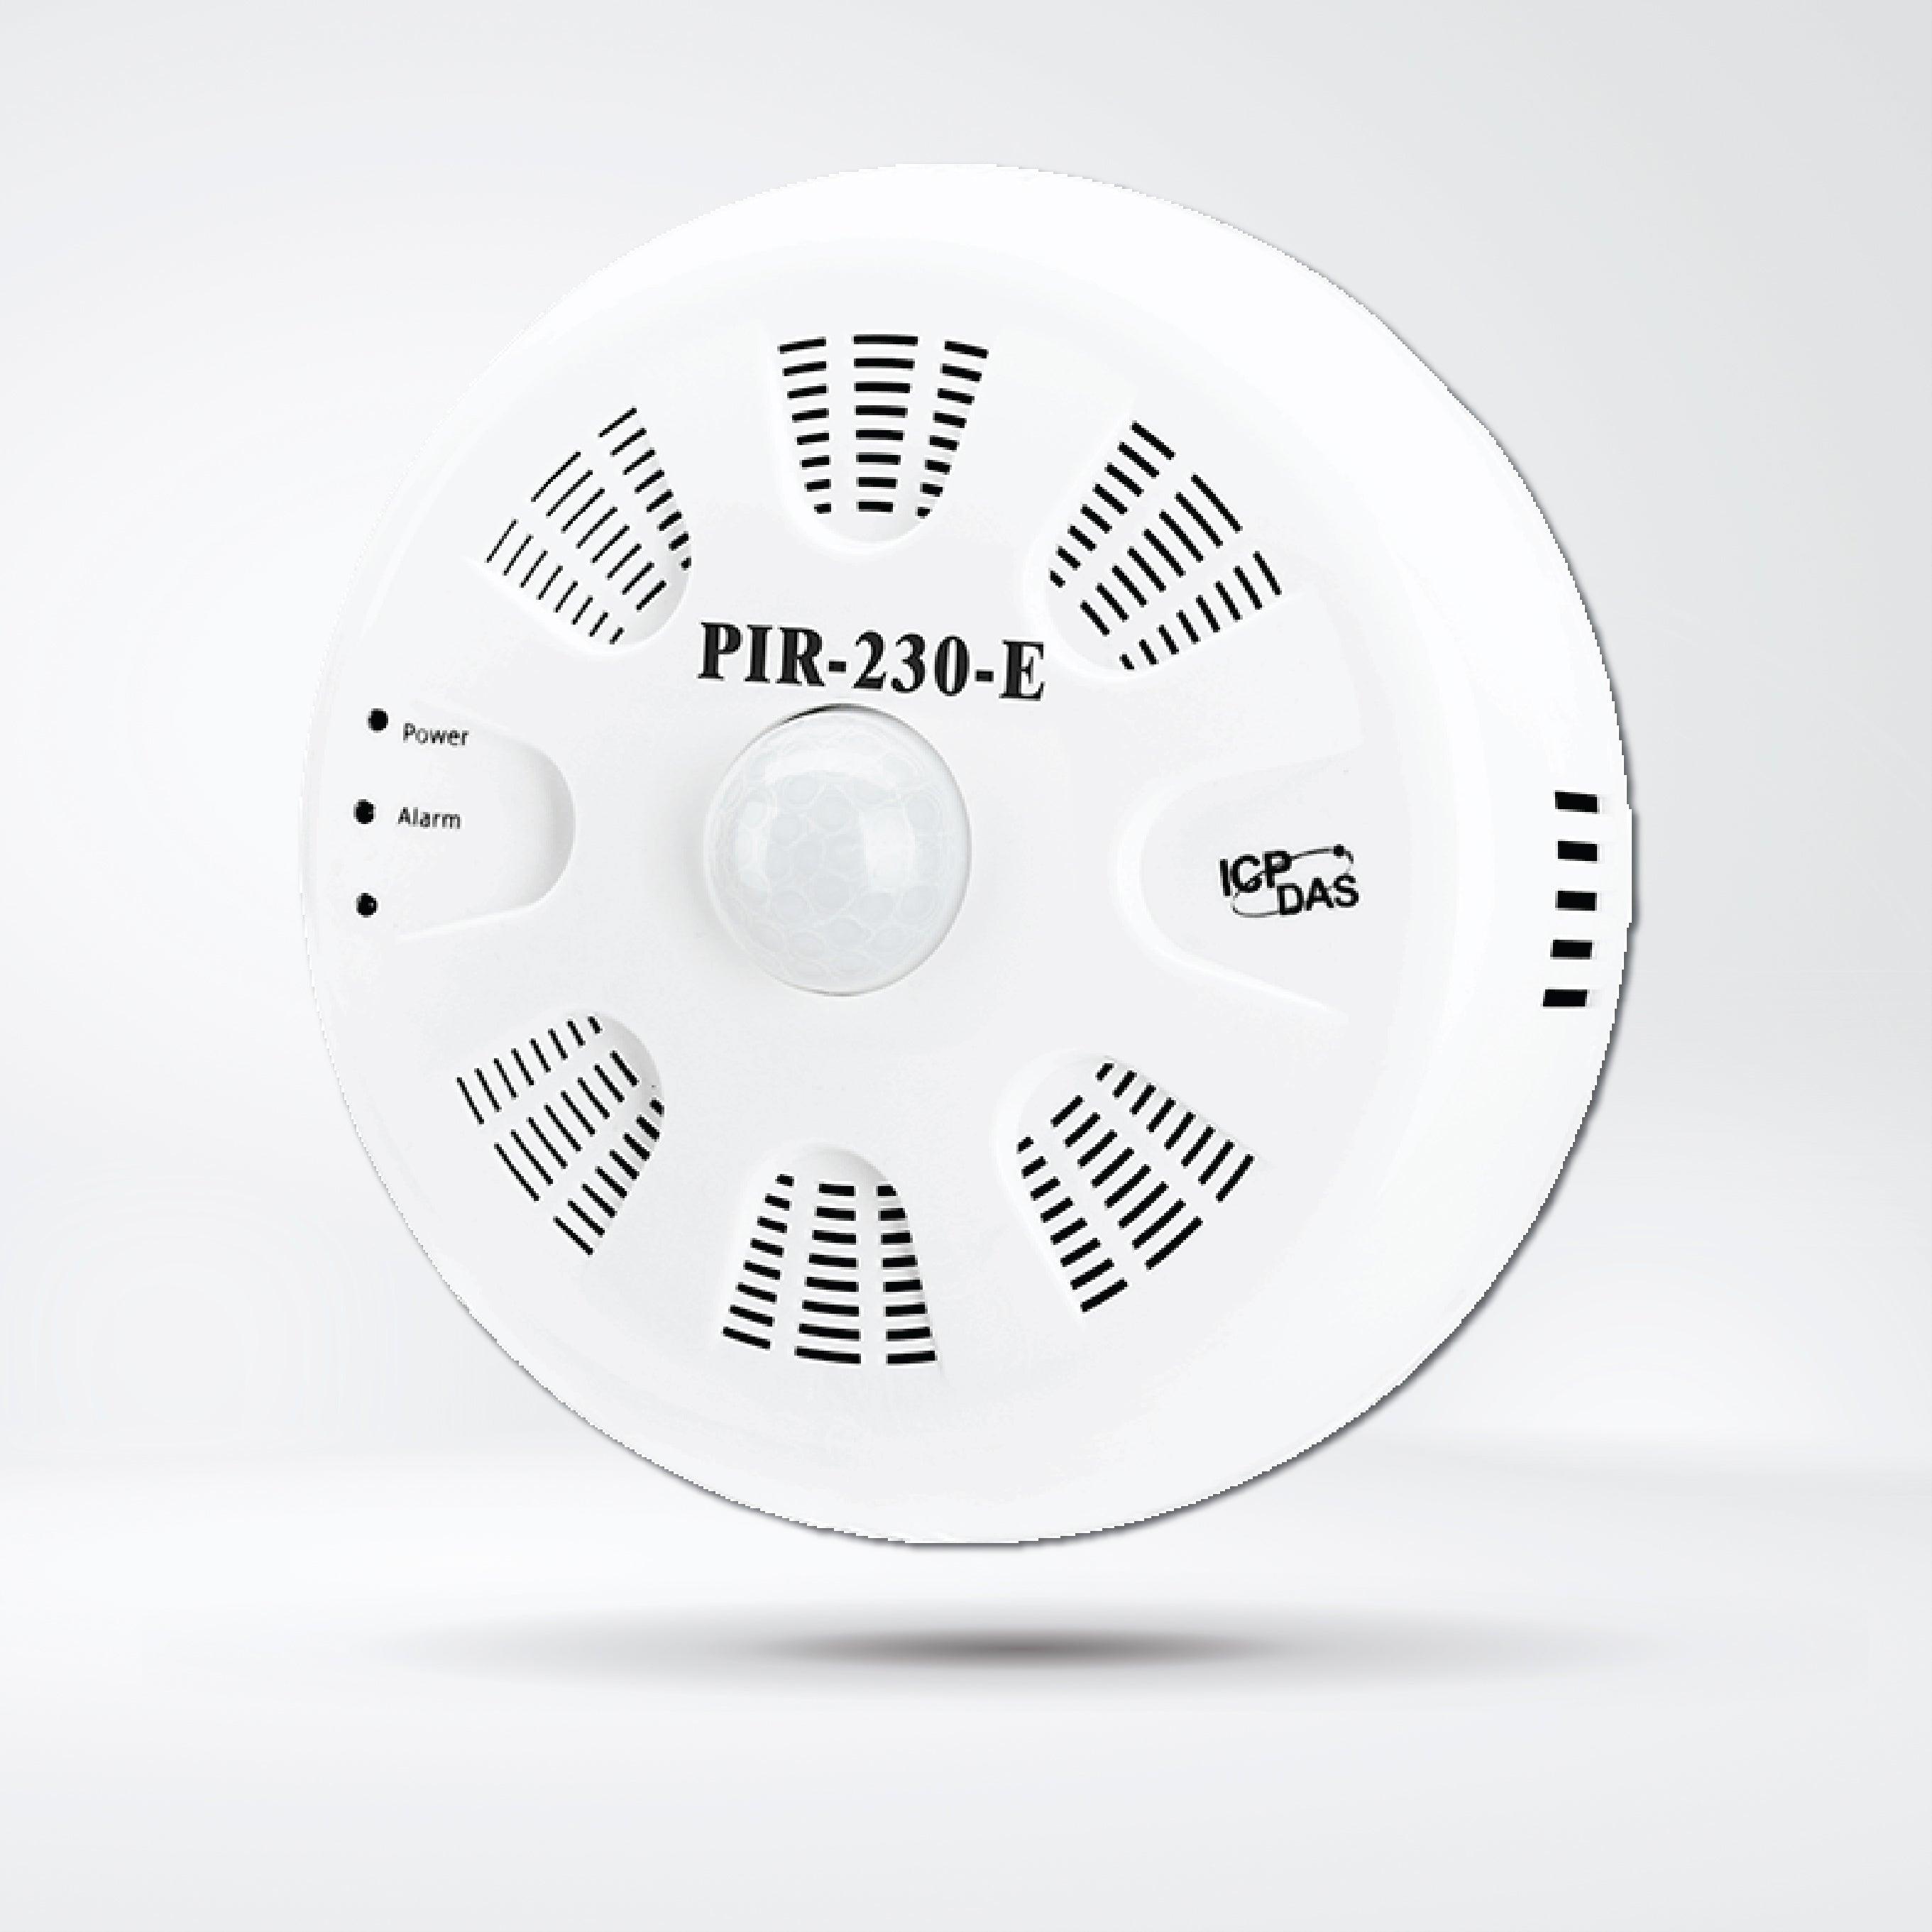 PIR-230-E PIR Motion Sensor (4m), Temperature and Humidity Sensor Module - Riverplus